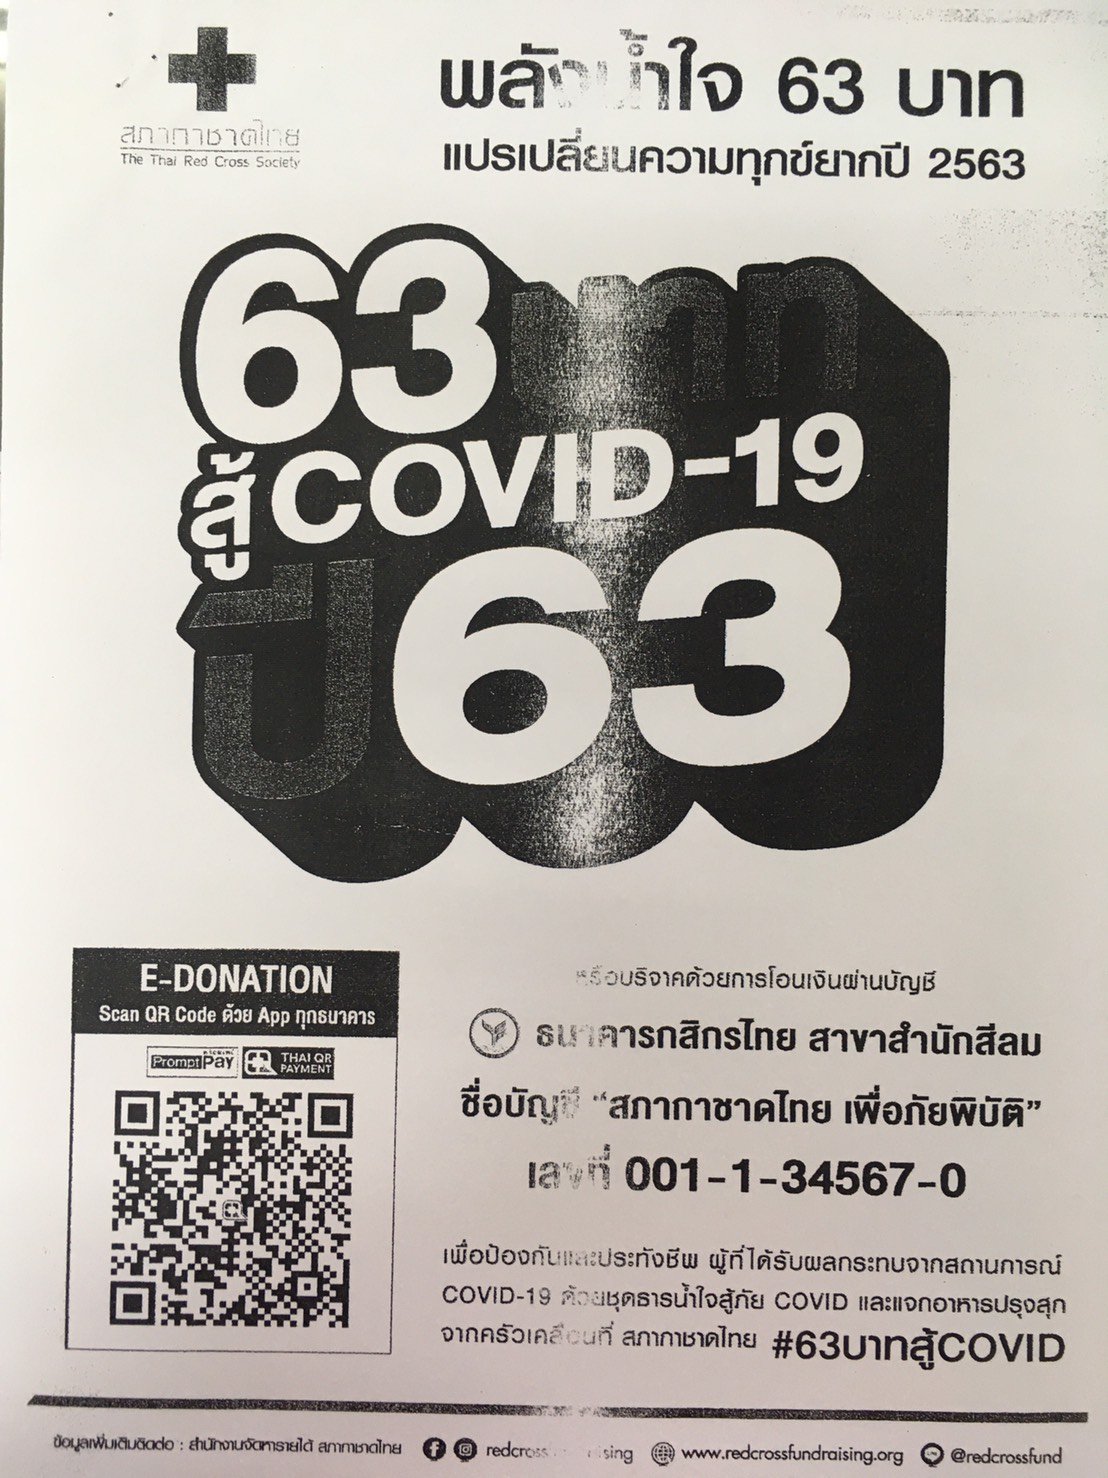 สภากาชาดไทย ขอเชิญร่วมเป็นส่วนหนึ่งในการป้องกันและลดความเสี่ยงการแพร่ระบาดของเชื้อไวรัส COVID-19 ด้วยการแสดงพลังน้ำใจ 63 บาท ผ่านแอพพลิเคชั่นธนาคารต่างๆ เพียงแสกน QR CODE E-DONATION